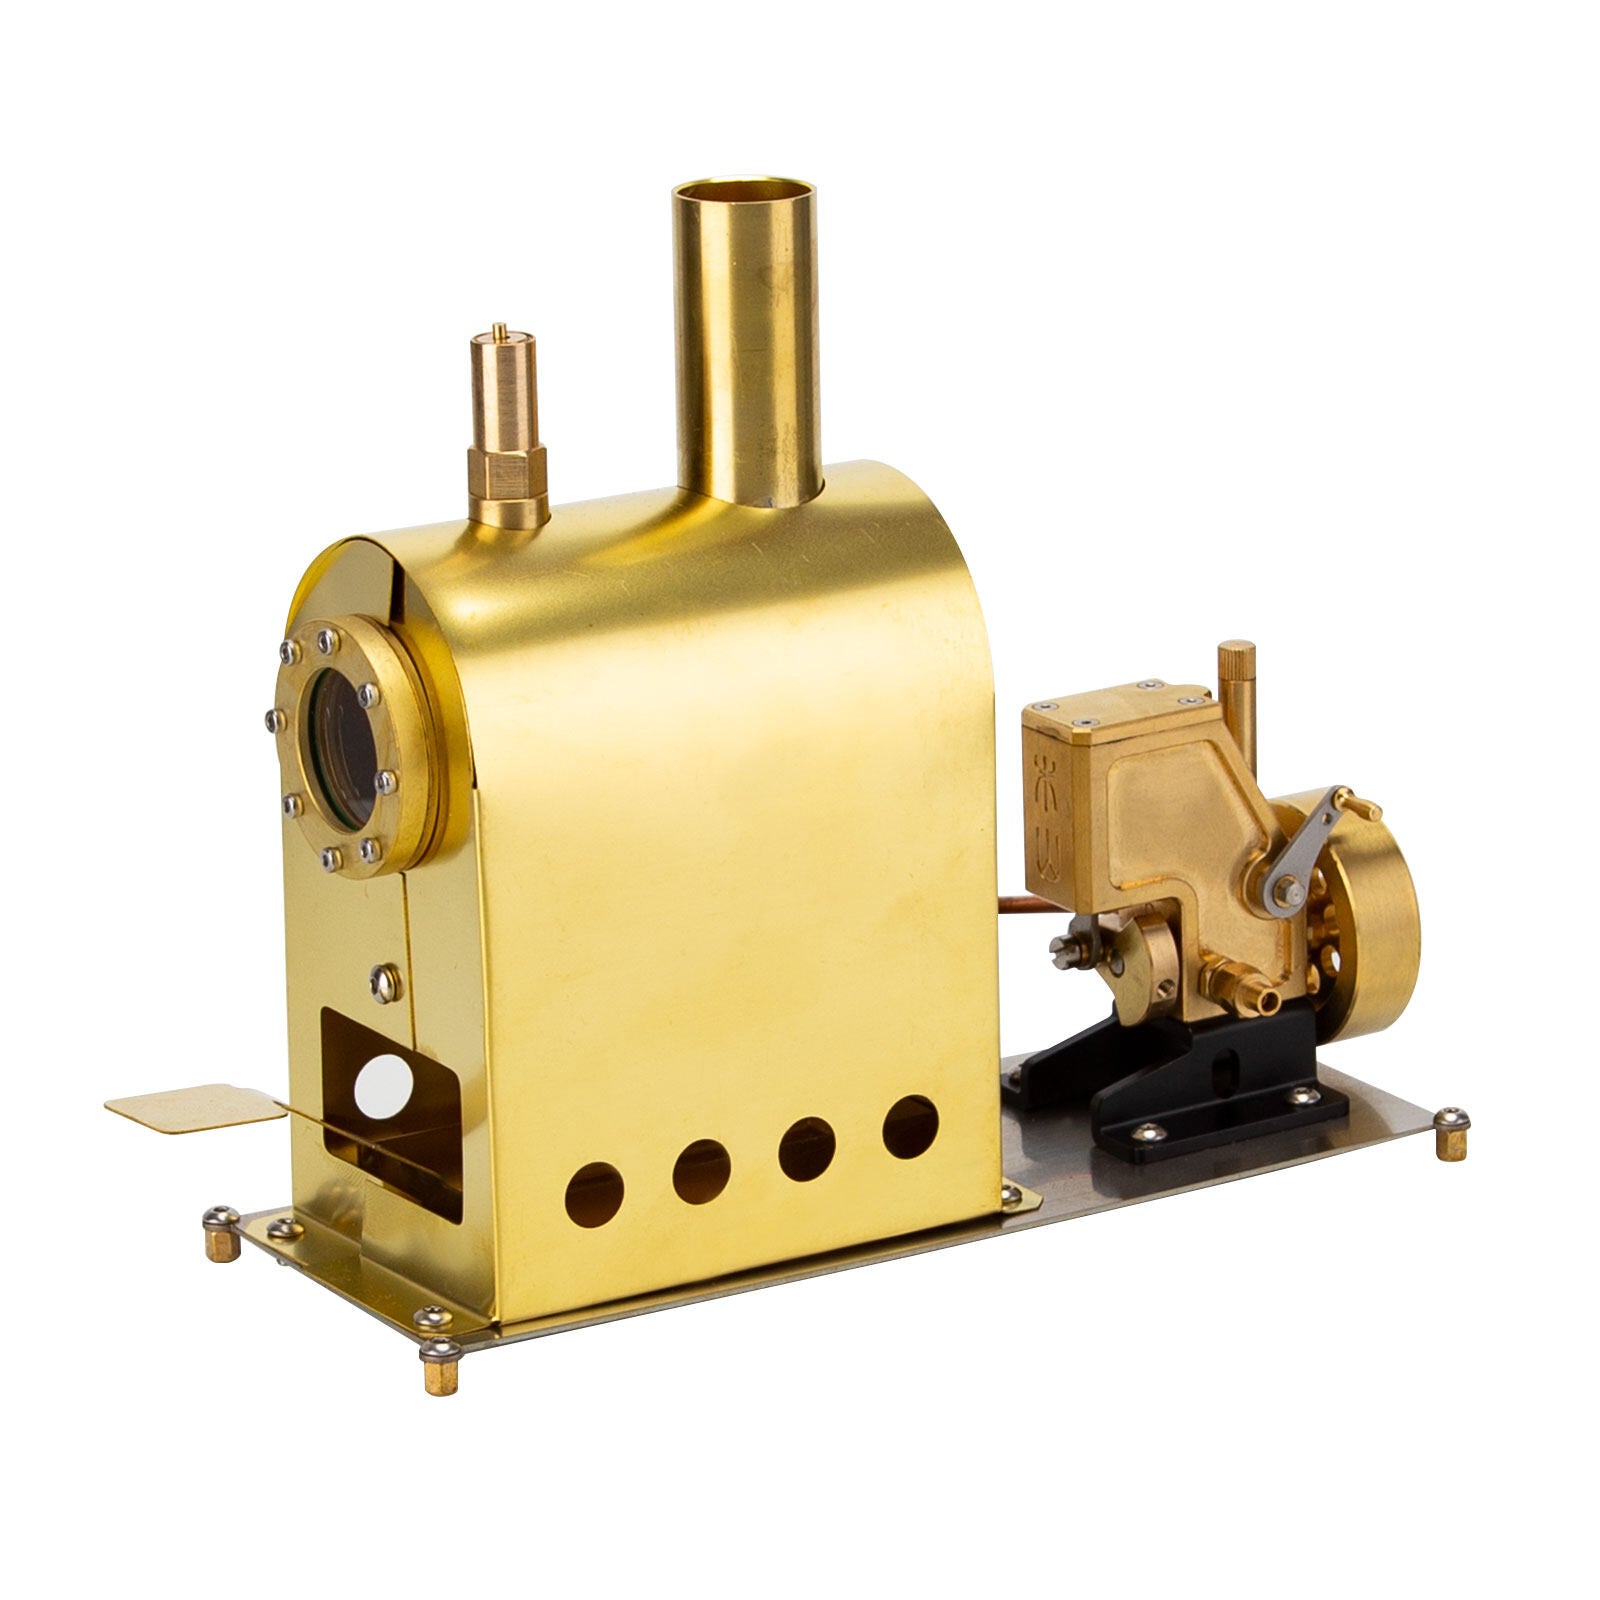 Miniatur-Dampfmaschinen-Modellspielzeug-Kreativgeschenkset mit Boiler - G-1B